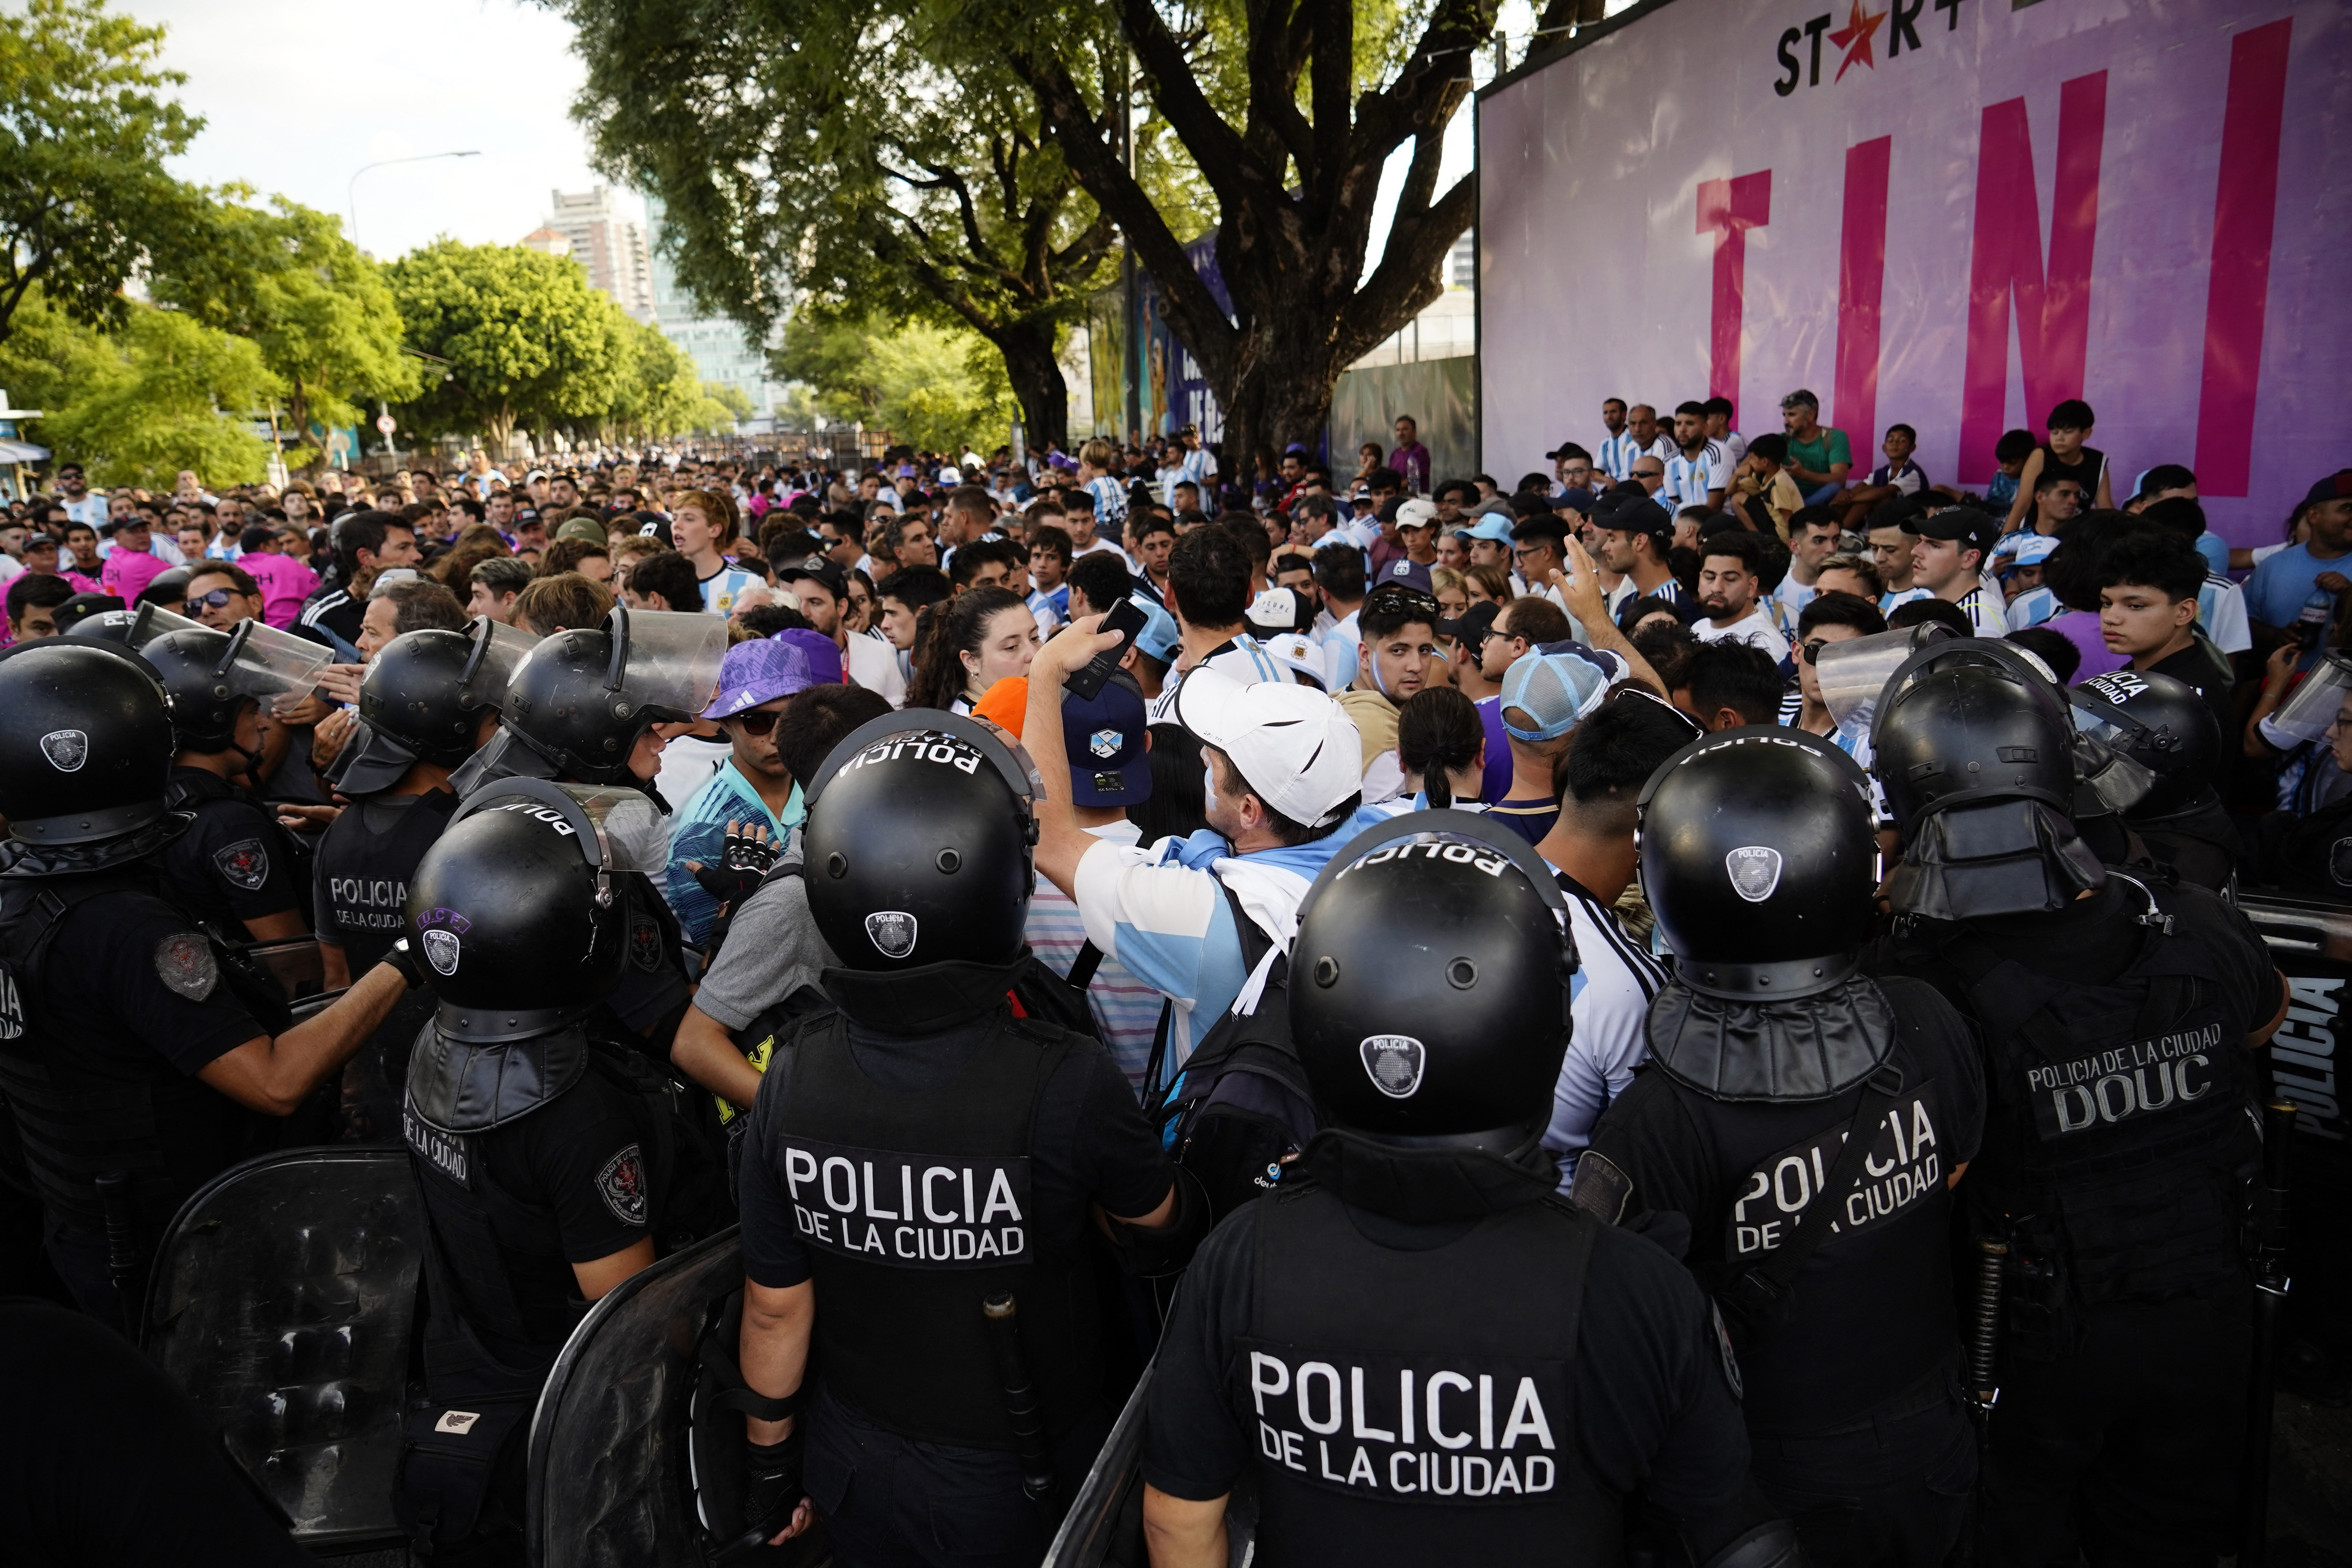 El cordón policial contiene a la multitud (REUTERS/Emmanuel Fernandez)